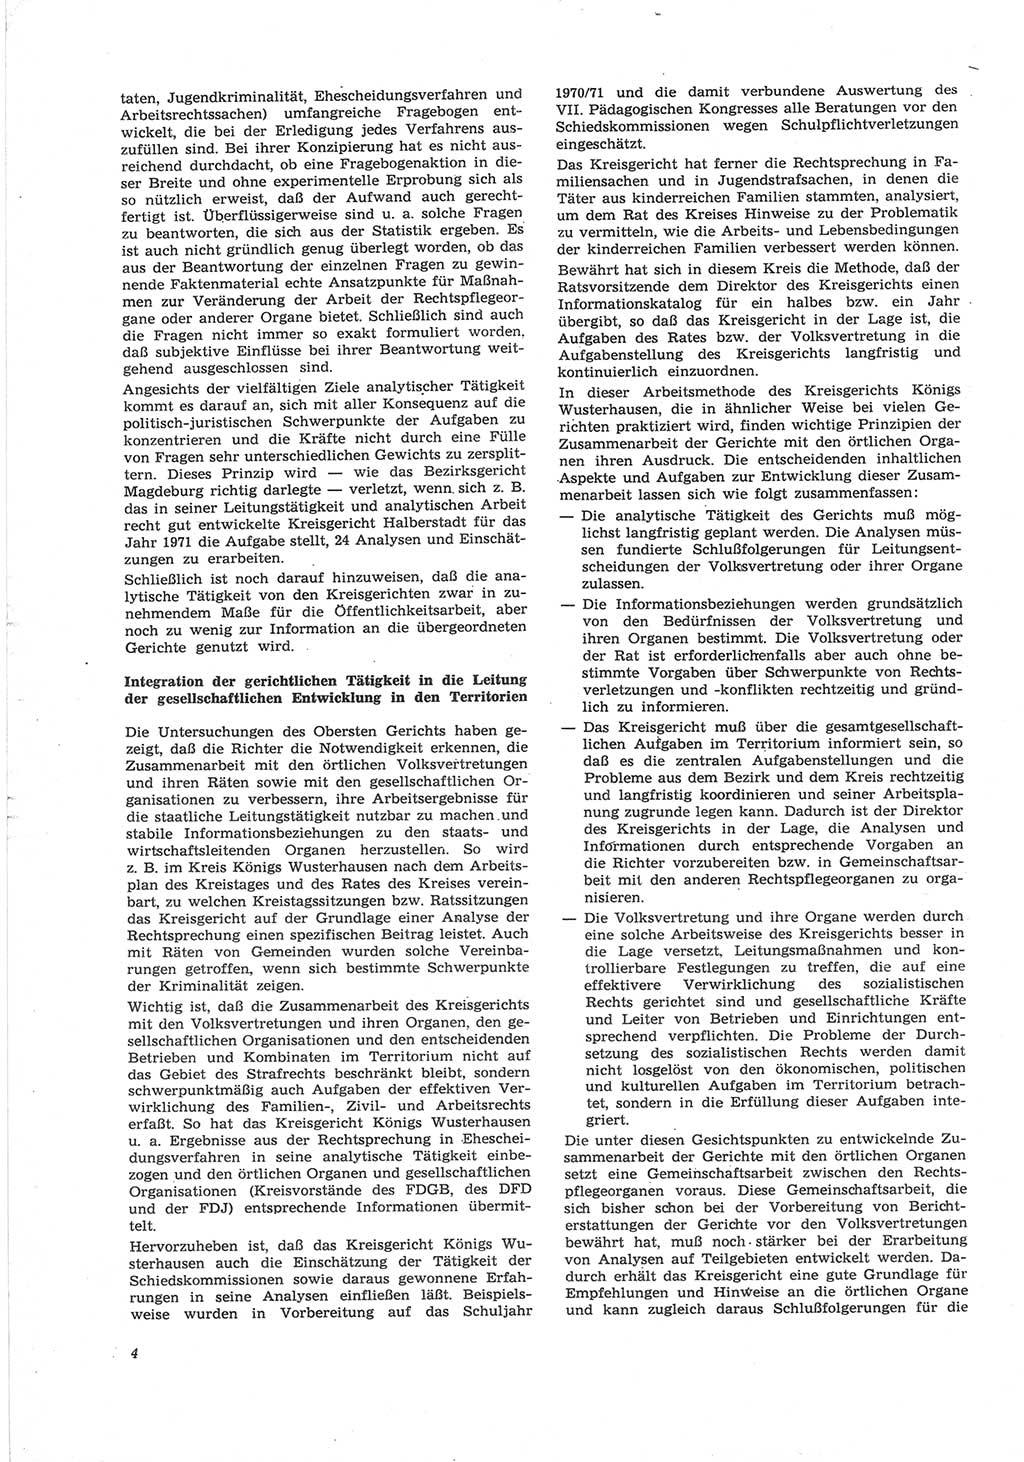 Neue Justiz (NJ), Zeitschrift für Recht und Rechtswissenschaft [Deutsche Demokratische Republik (DDR)], 25. Jahrgang 1971, Seite 4 (NJ DDR 1971, S. 4)